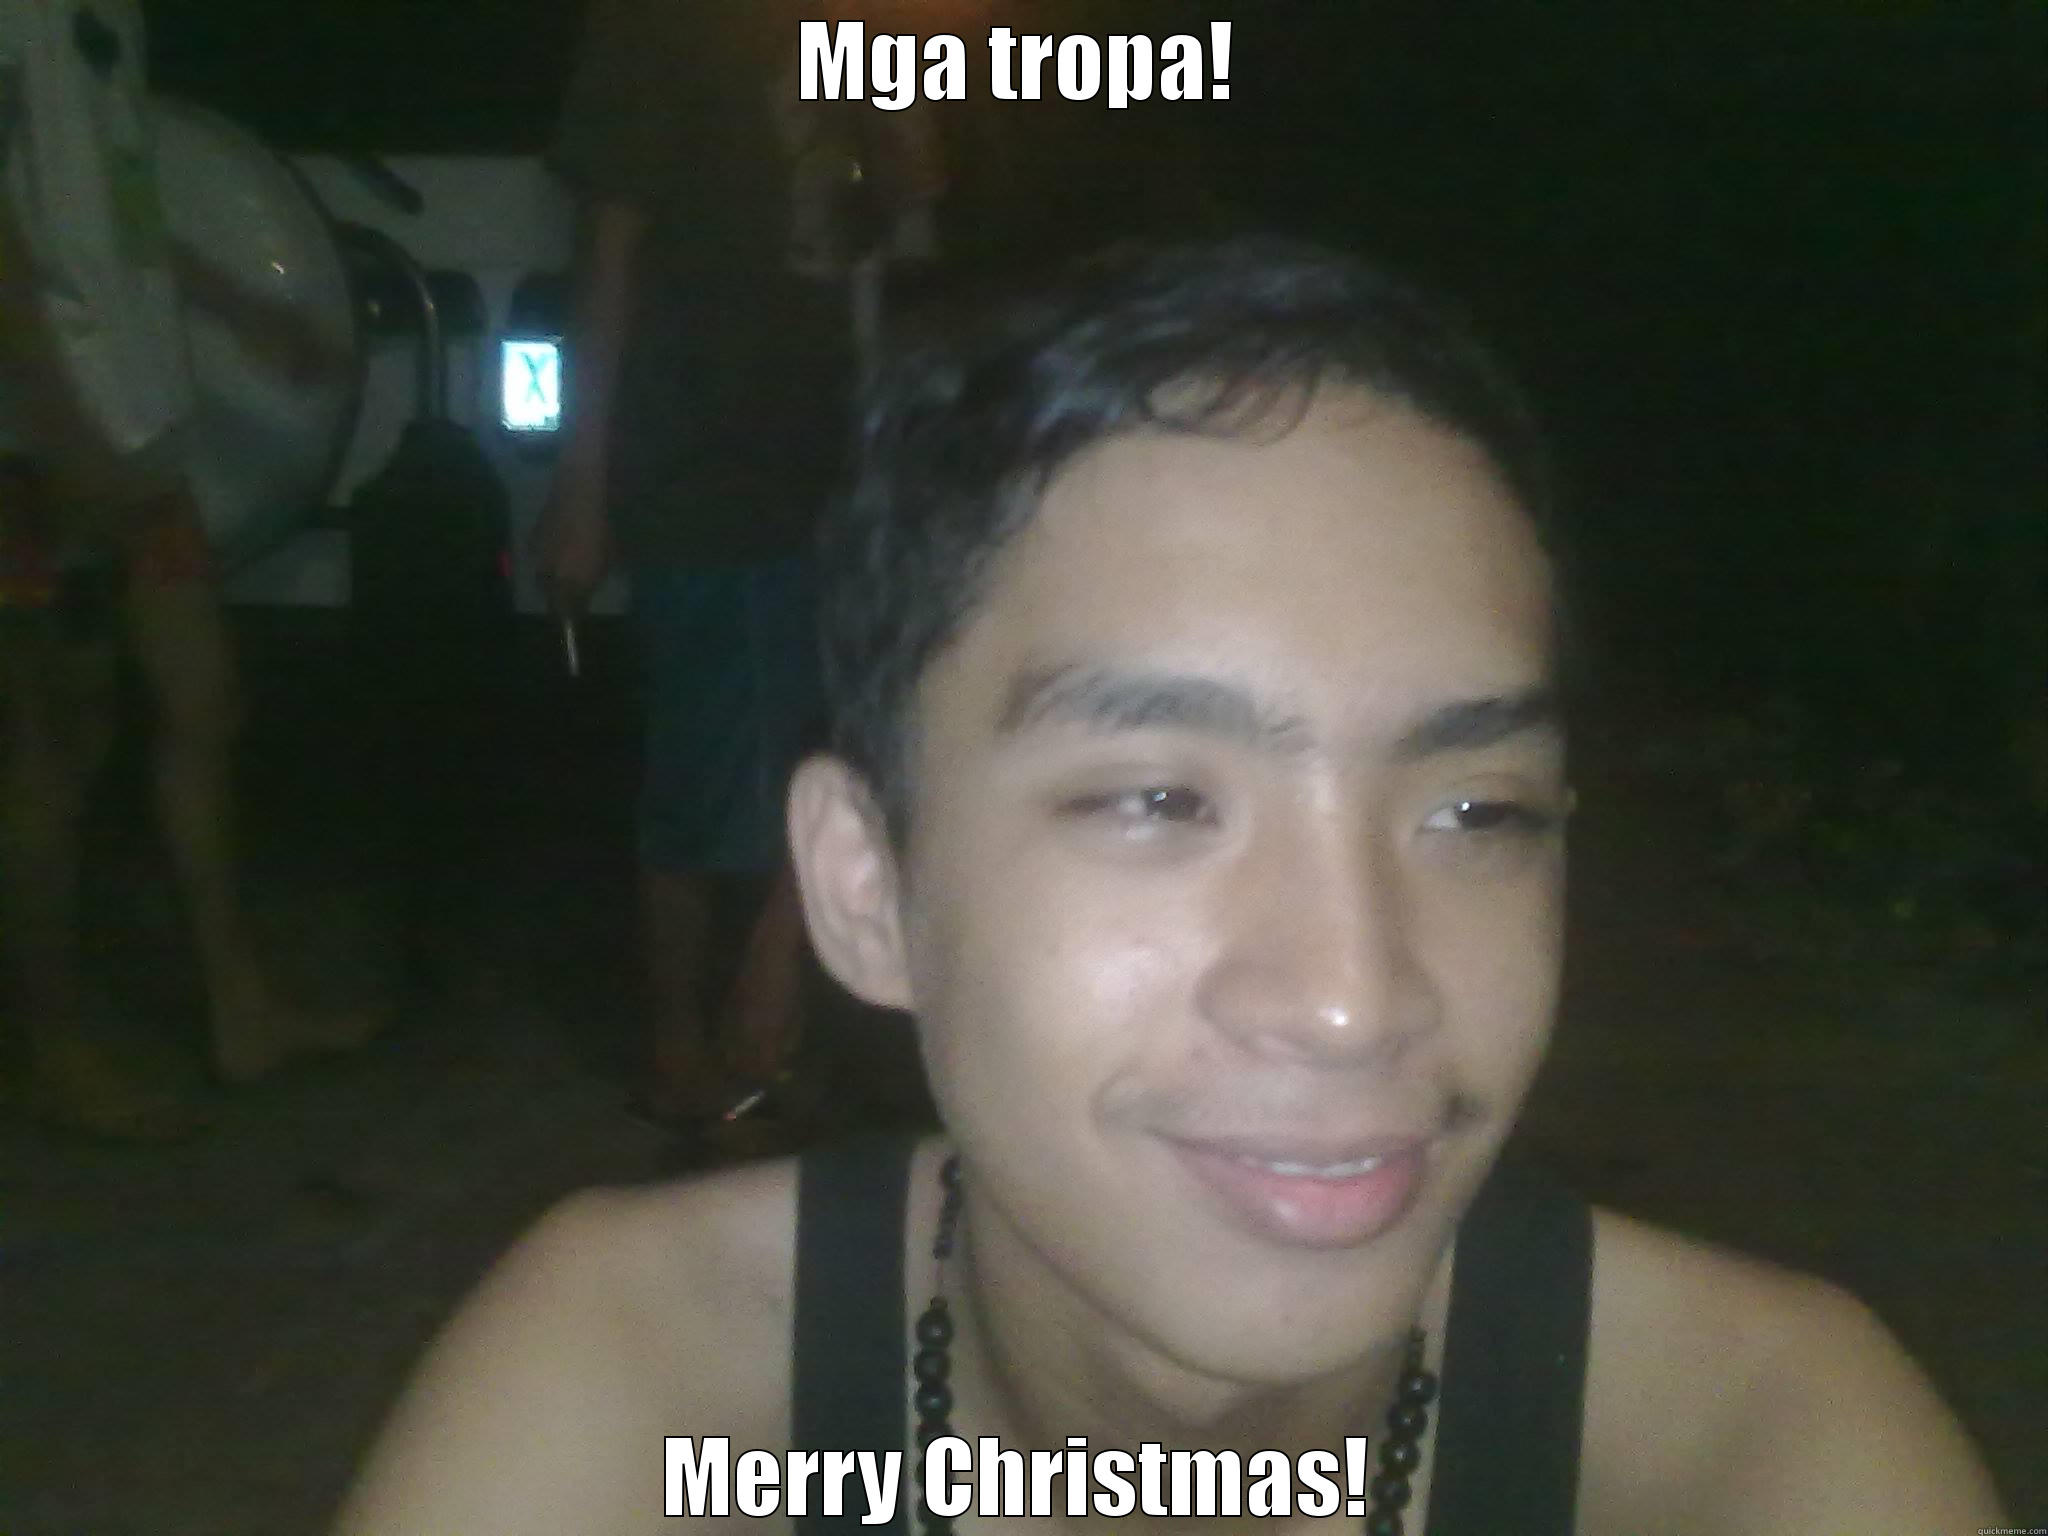 Merry Christmas! - MGA TROPA! MERRY CHRISTMAS!! Misc